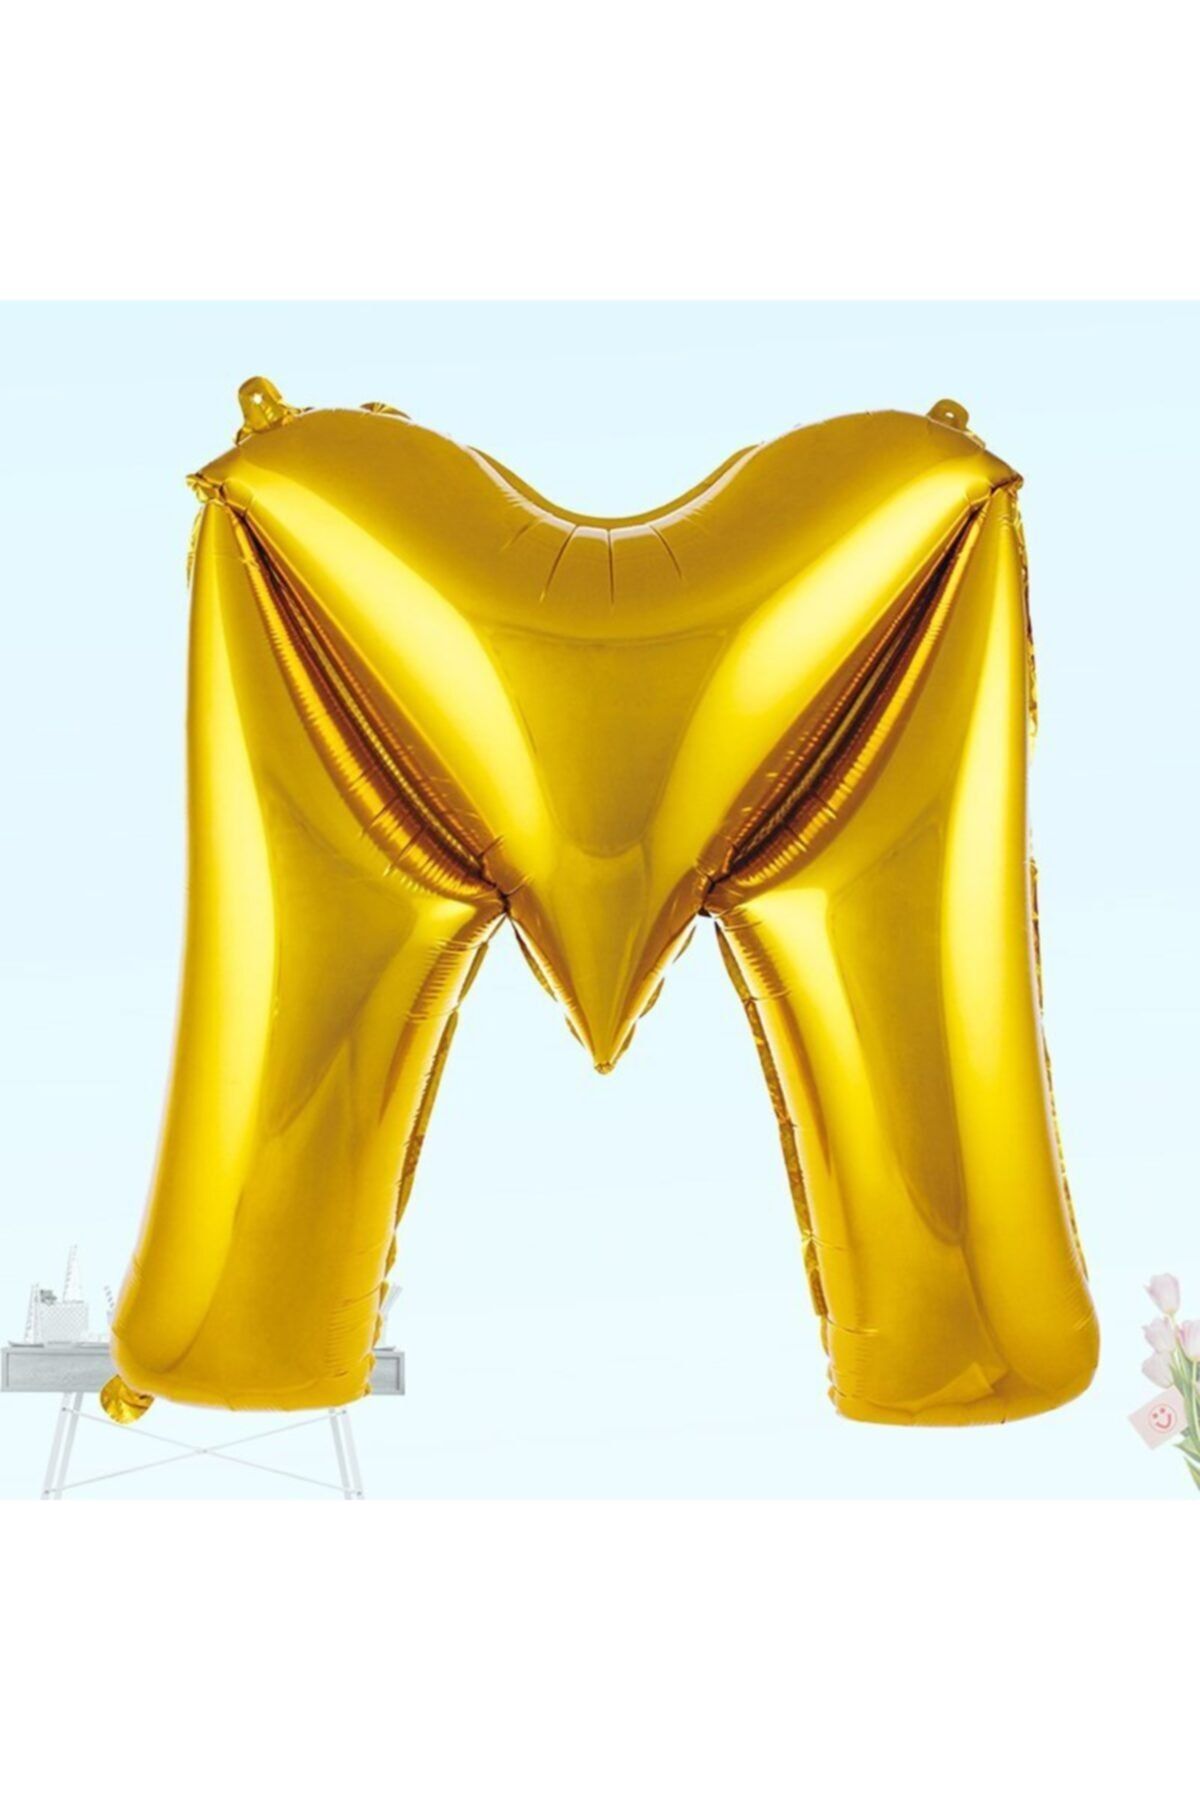 Genel Markalar Folyo Balon M Harfi Gold Renk - M Harf Balon - Harf Folyo Balon 100 cm Gold Balon